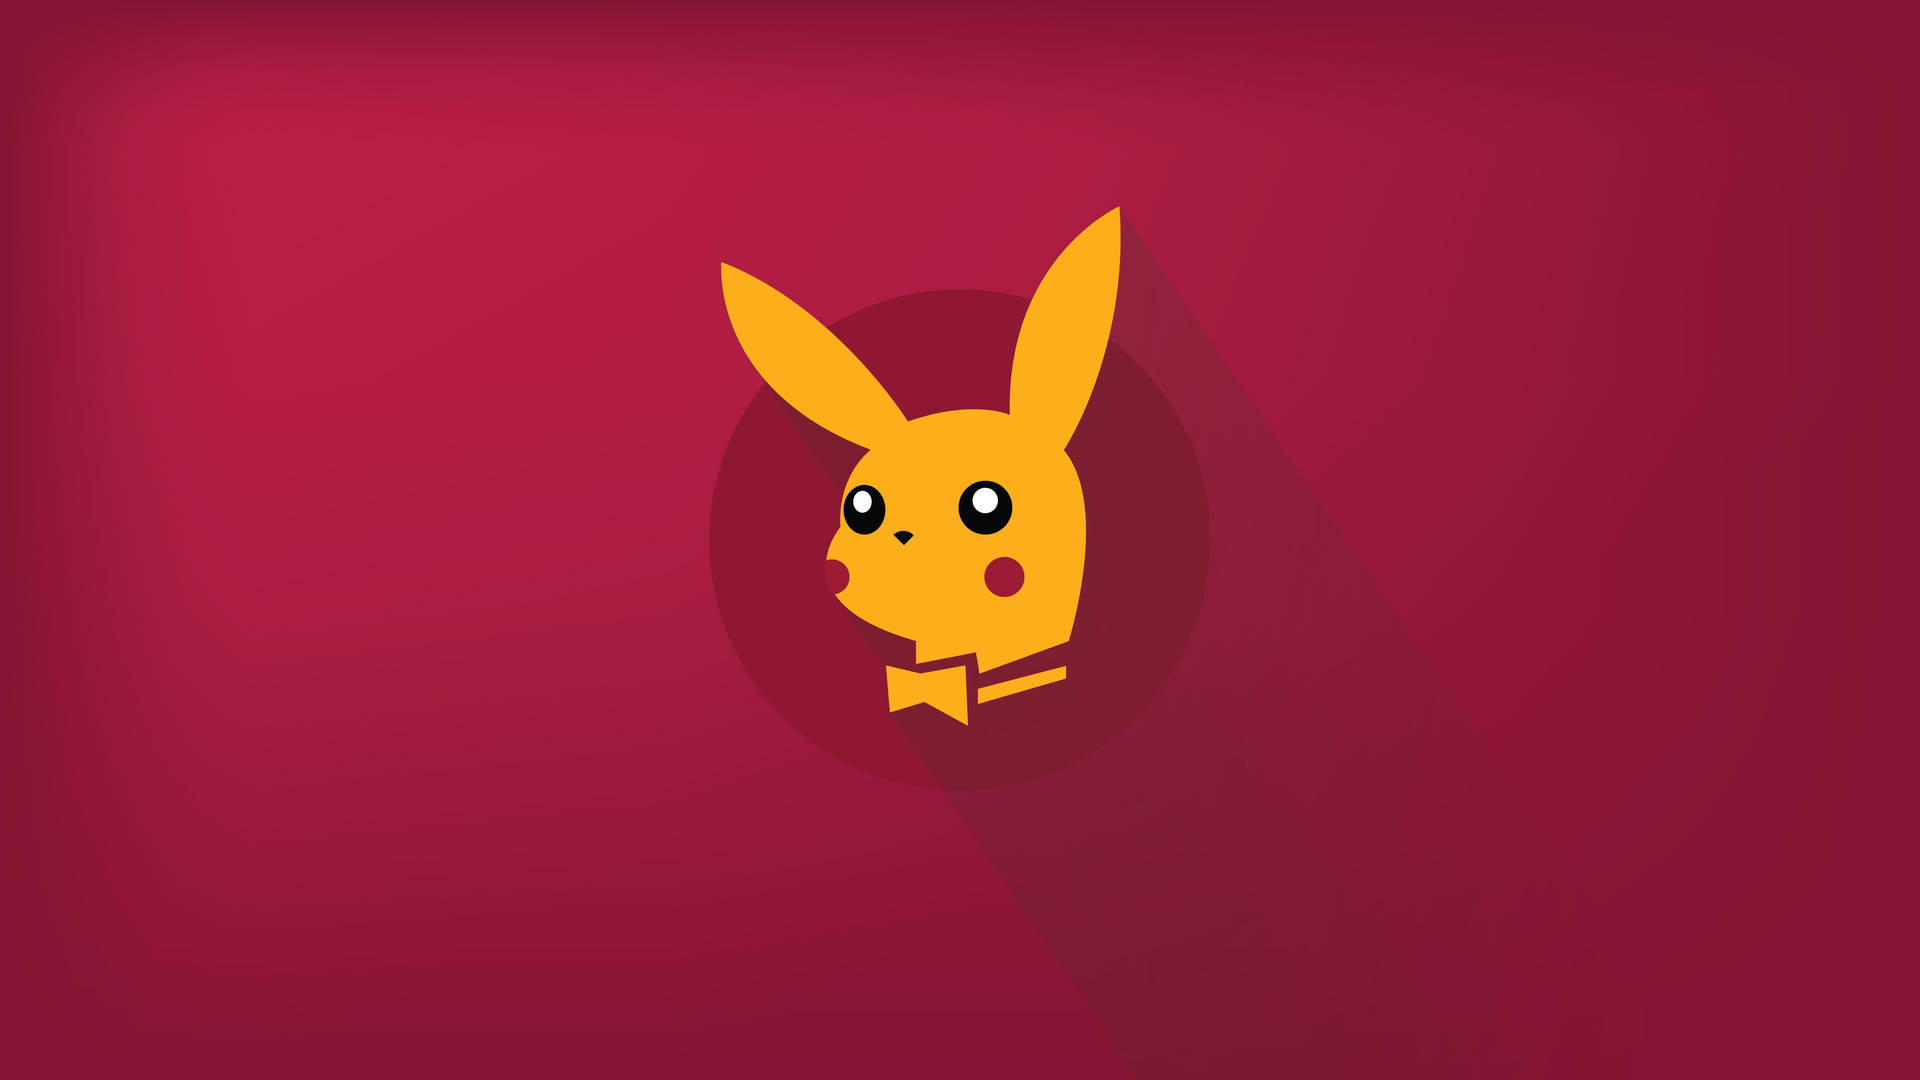 Playboy Pikachu 4k Vector Art Wallpaper